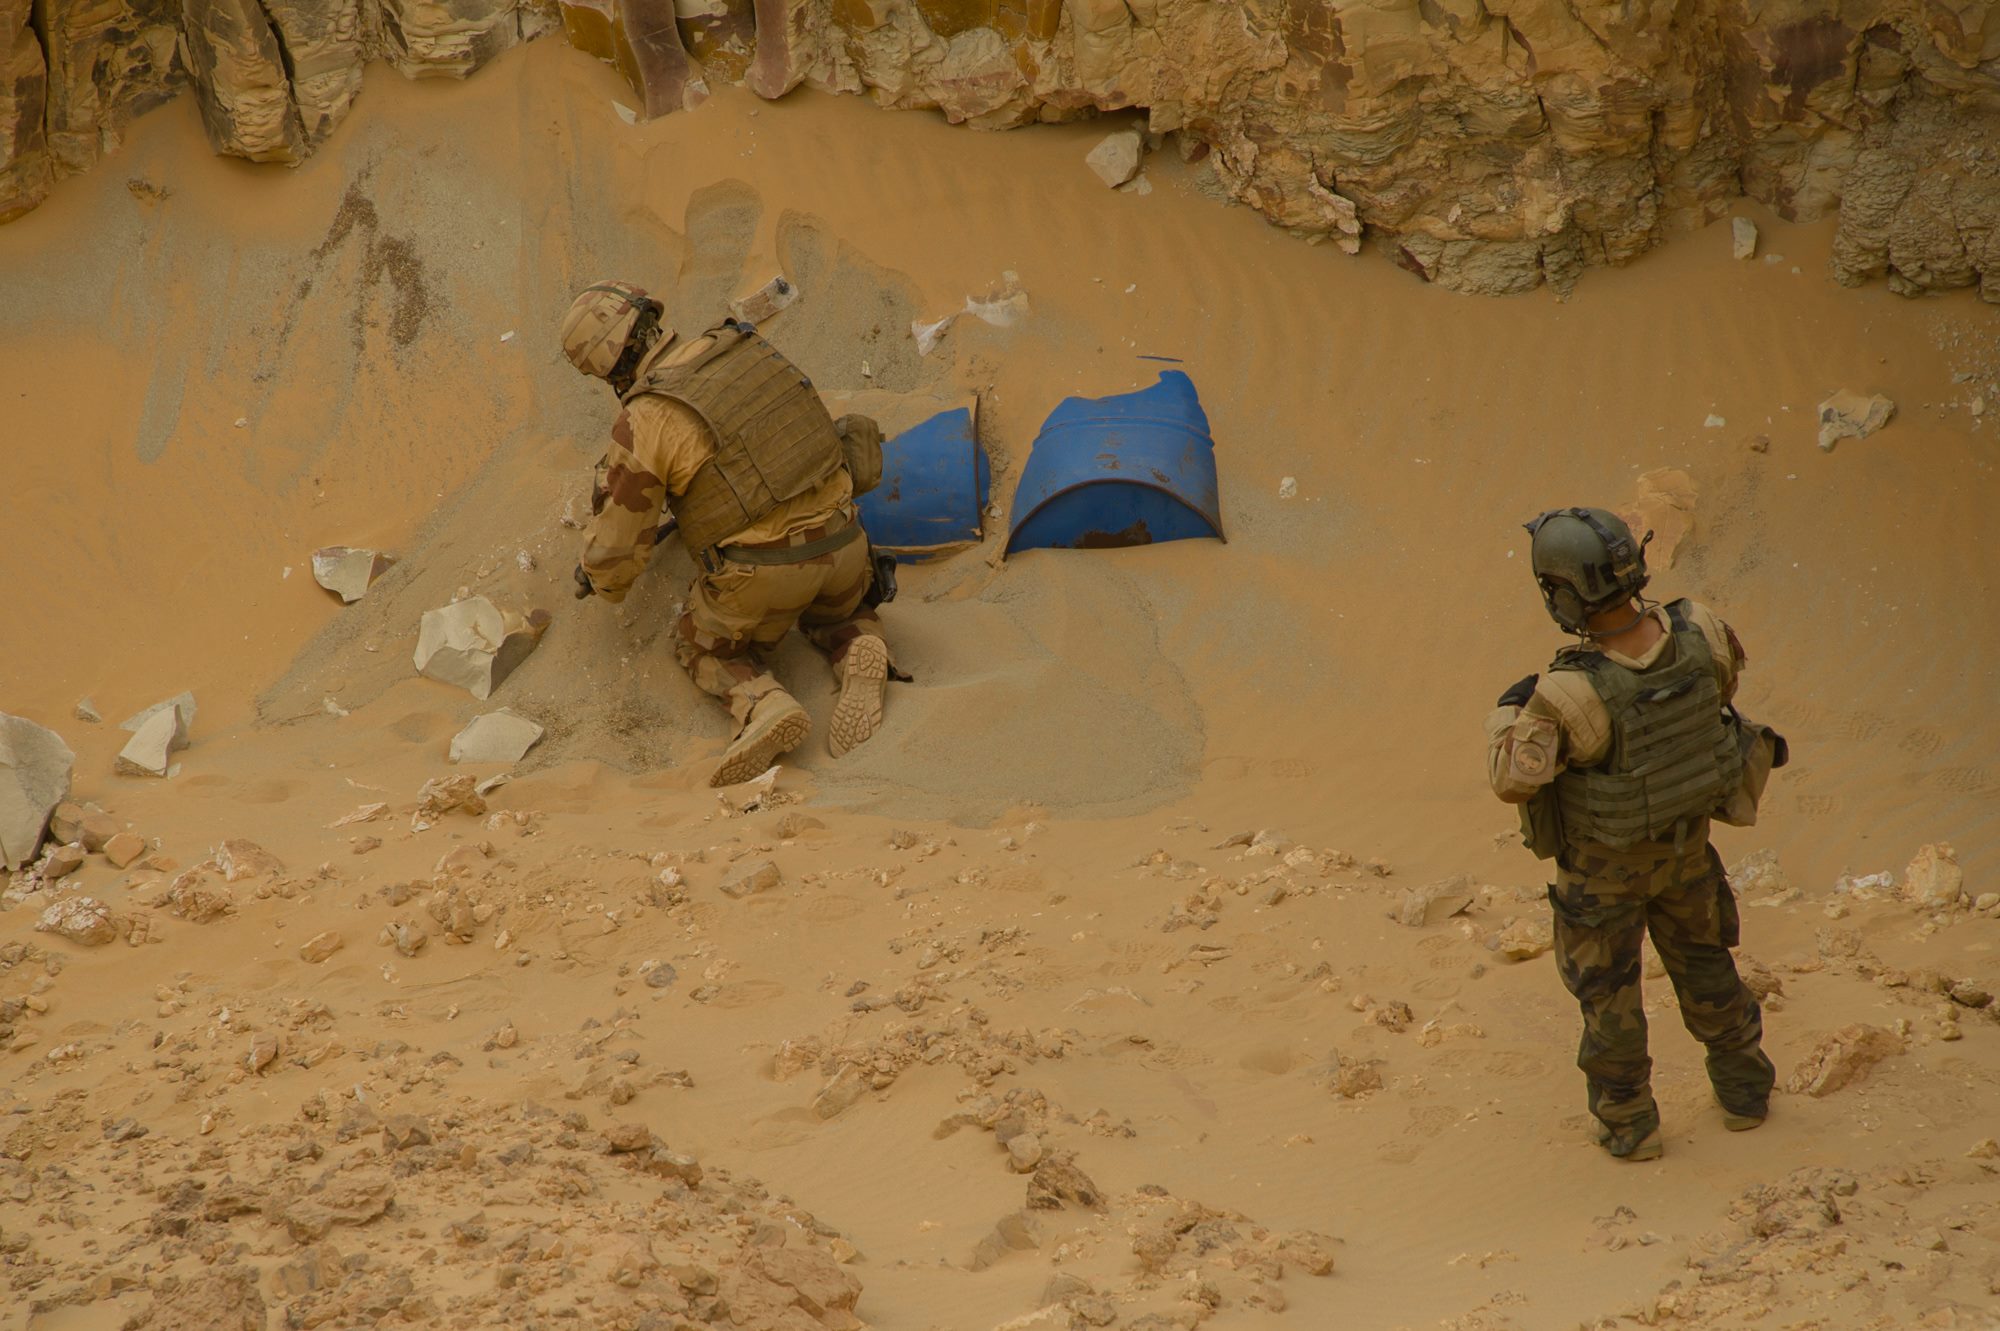 Une unité de l'armée de terre découvre une cache d'arme dans le désert. Photo État-major des armées